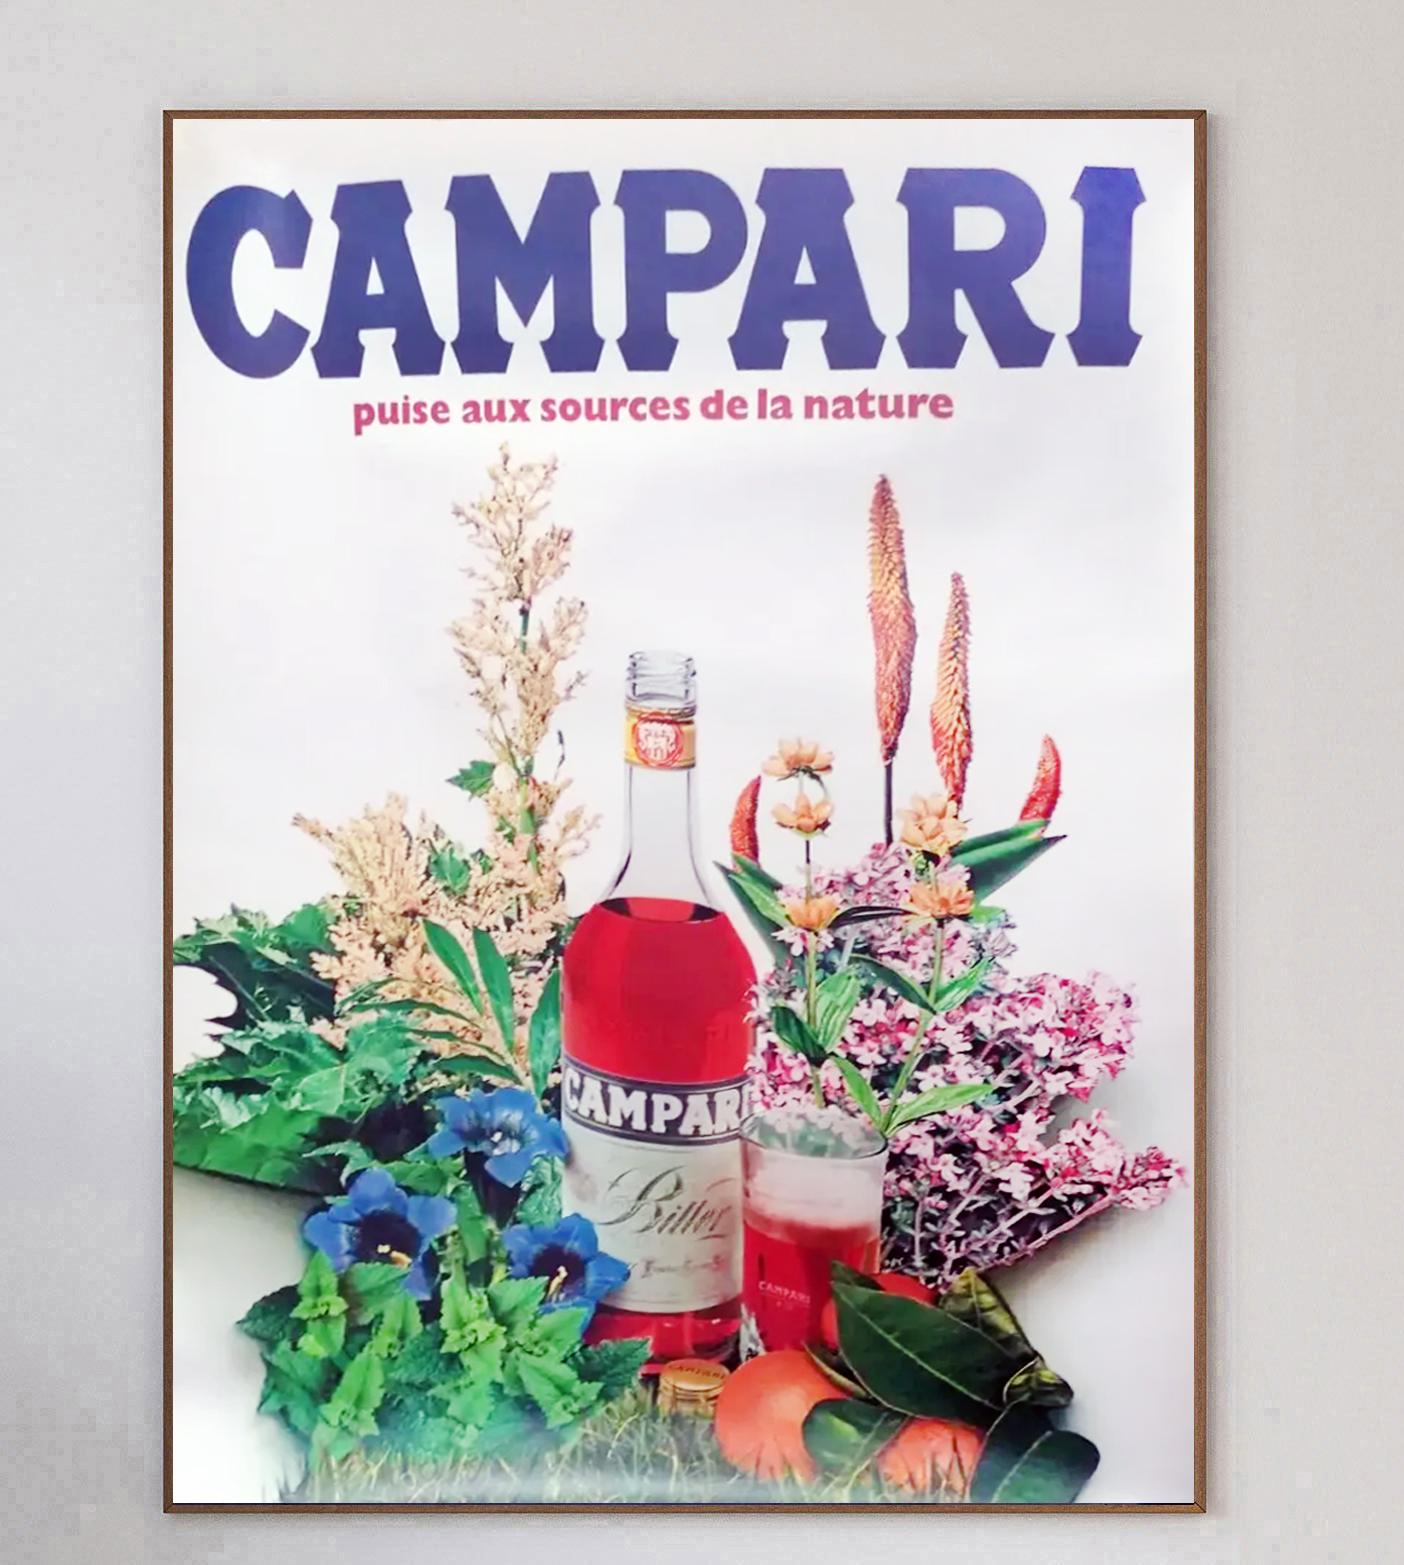 L'emblématique marque de liqueur italienne Campari a collaboré avec de nombreux artistes tout au long du XXe siècle, créant des œuvres d'art merveilleuses et intemporelles. Campari a été formé en 1860 par Gaspare Campari et l'apéritif est toujours